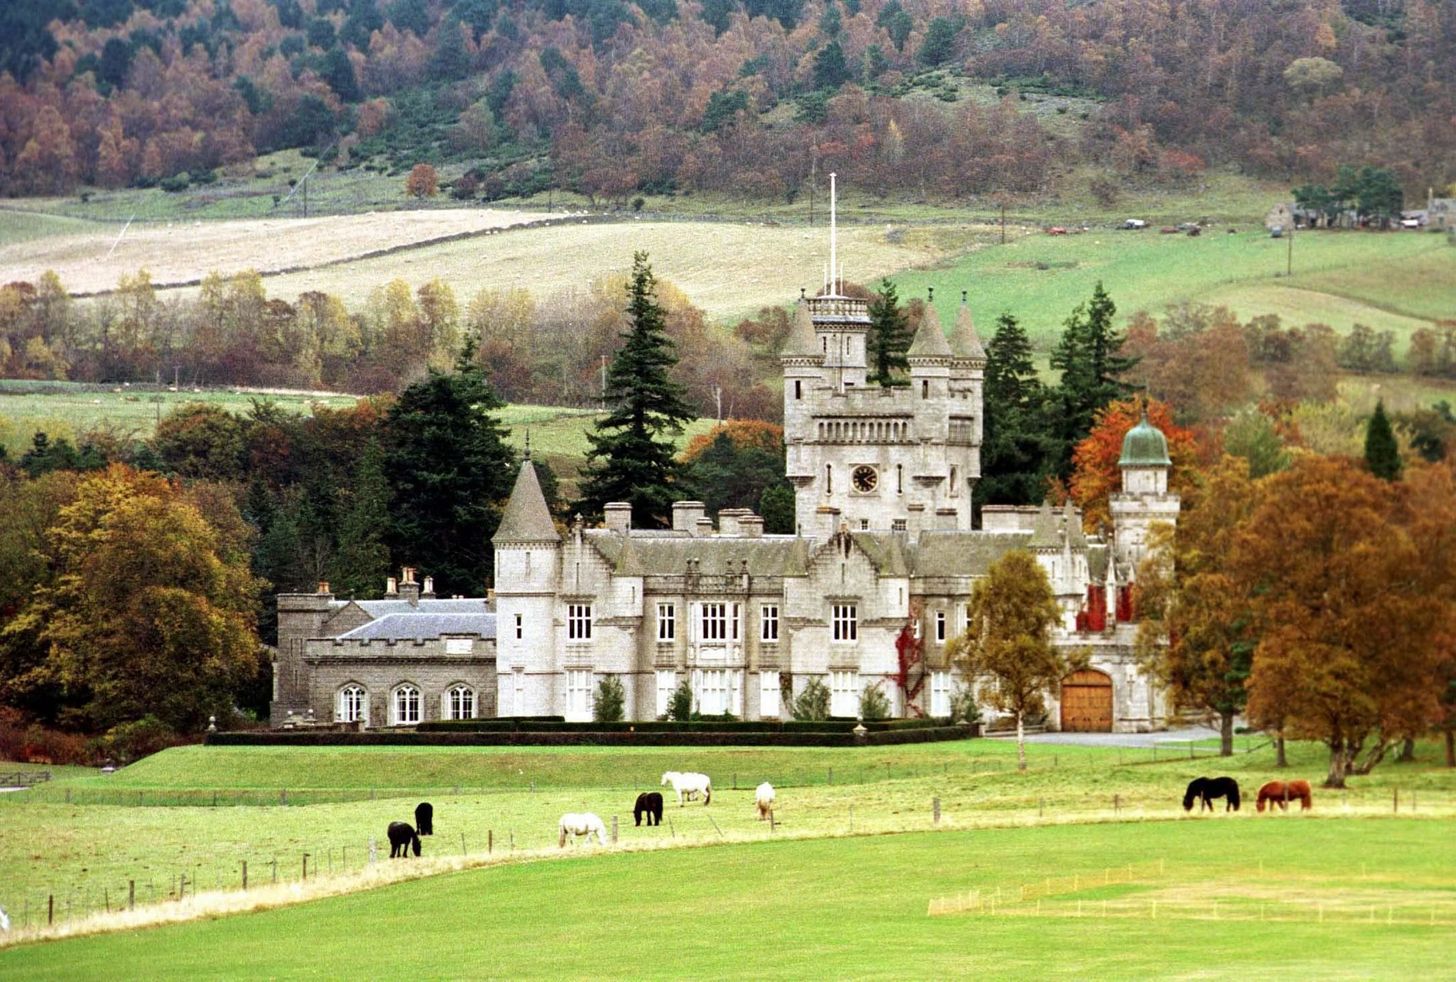 Balmoral Castle opent de deuren voor publiek, dit wil je weten over het Schotse kasteel